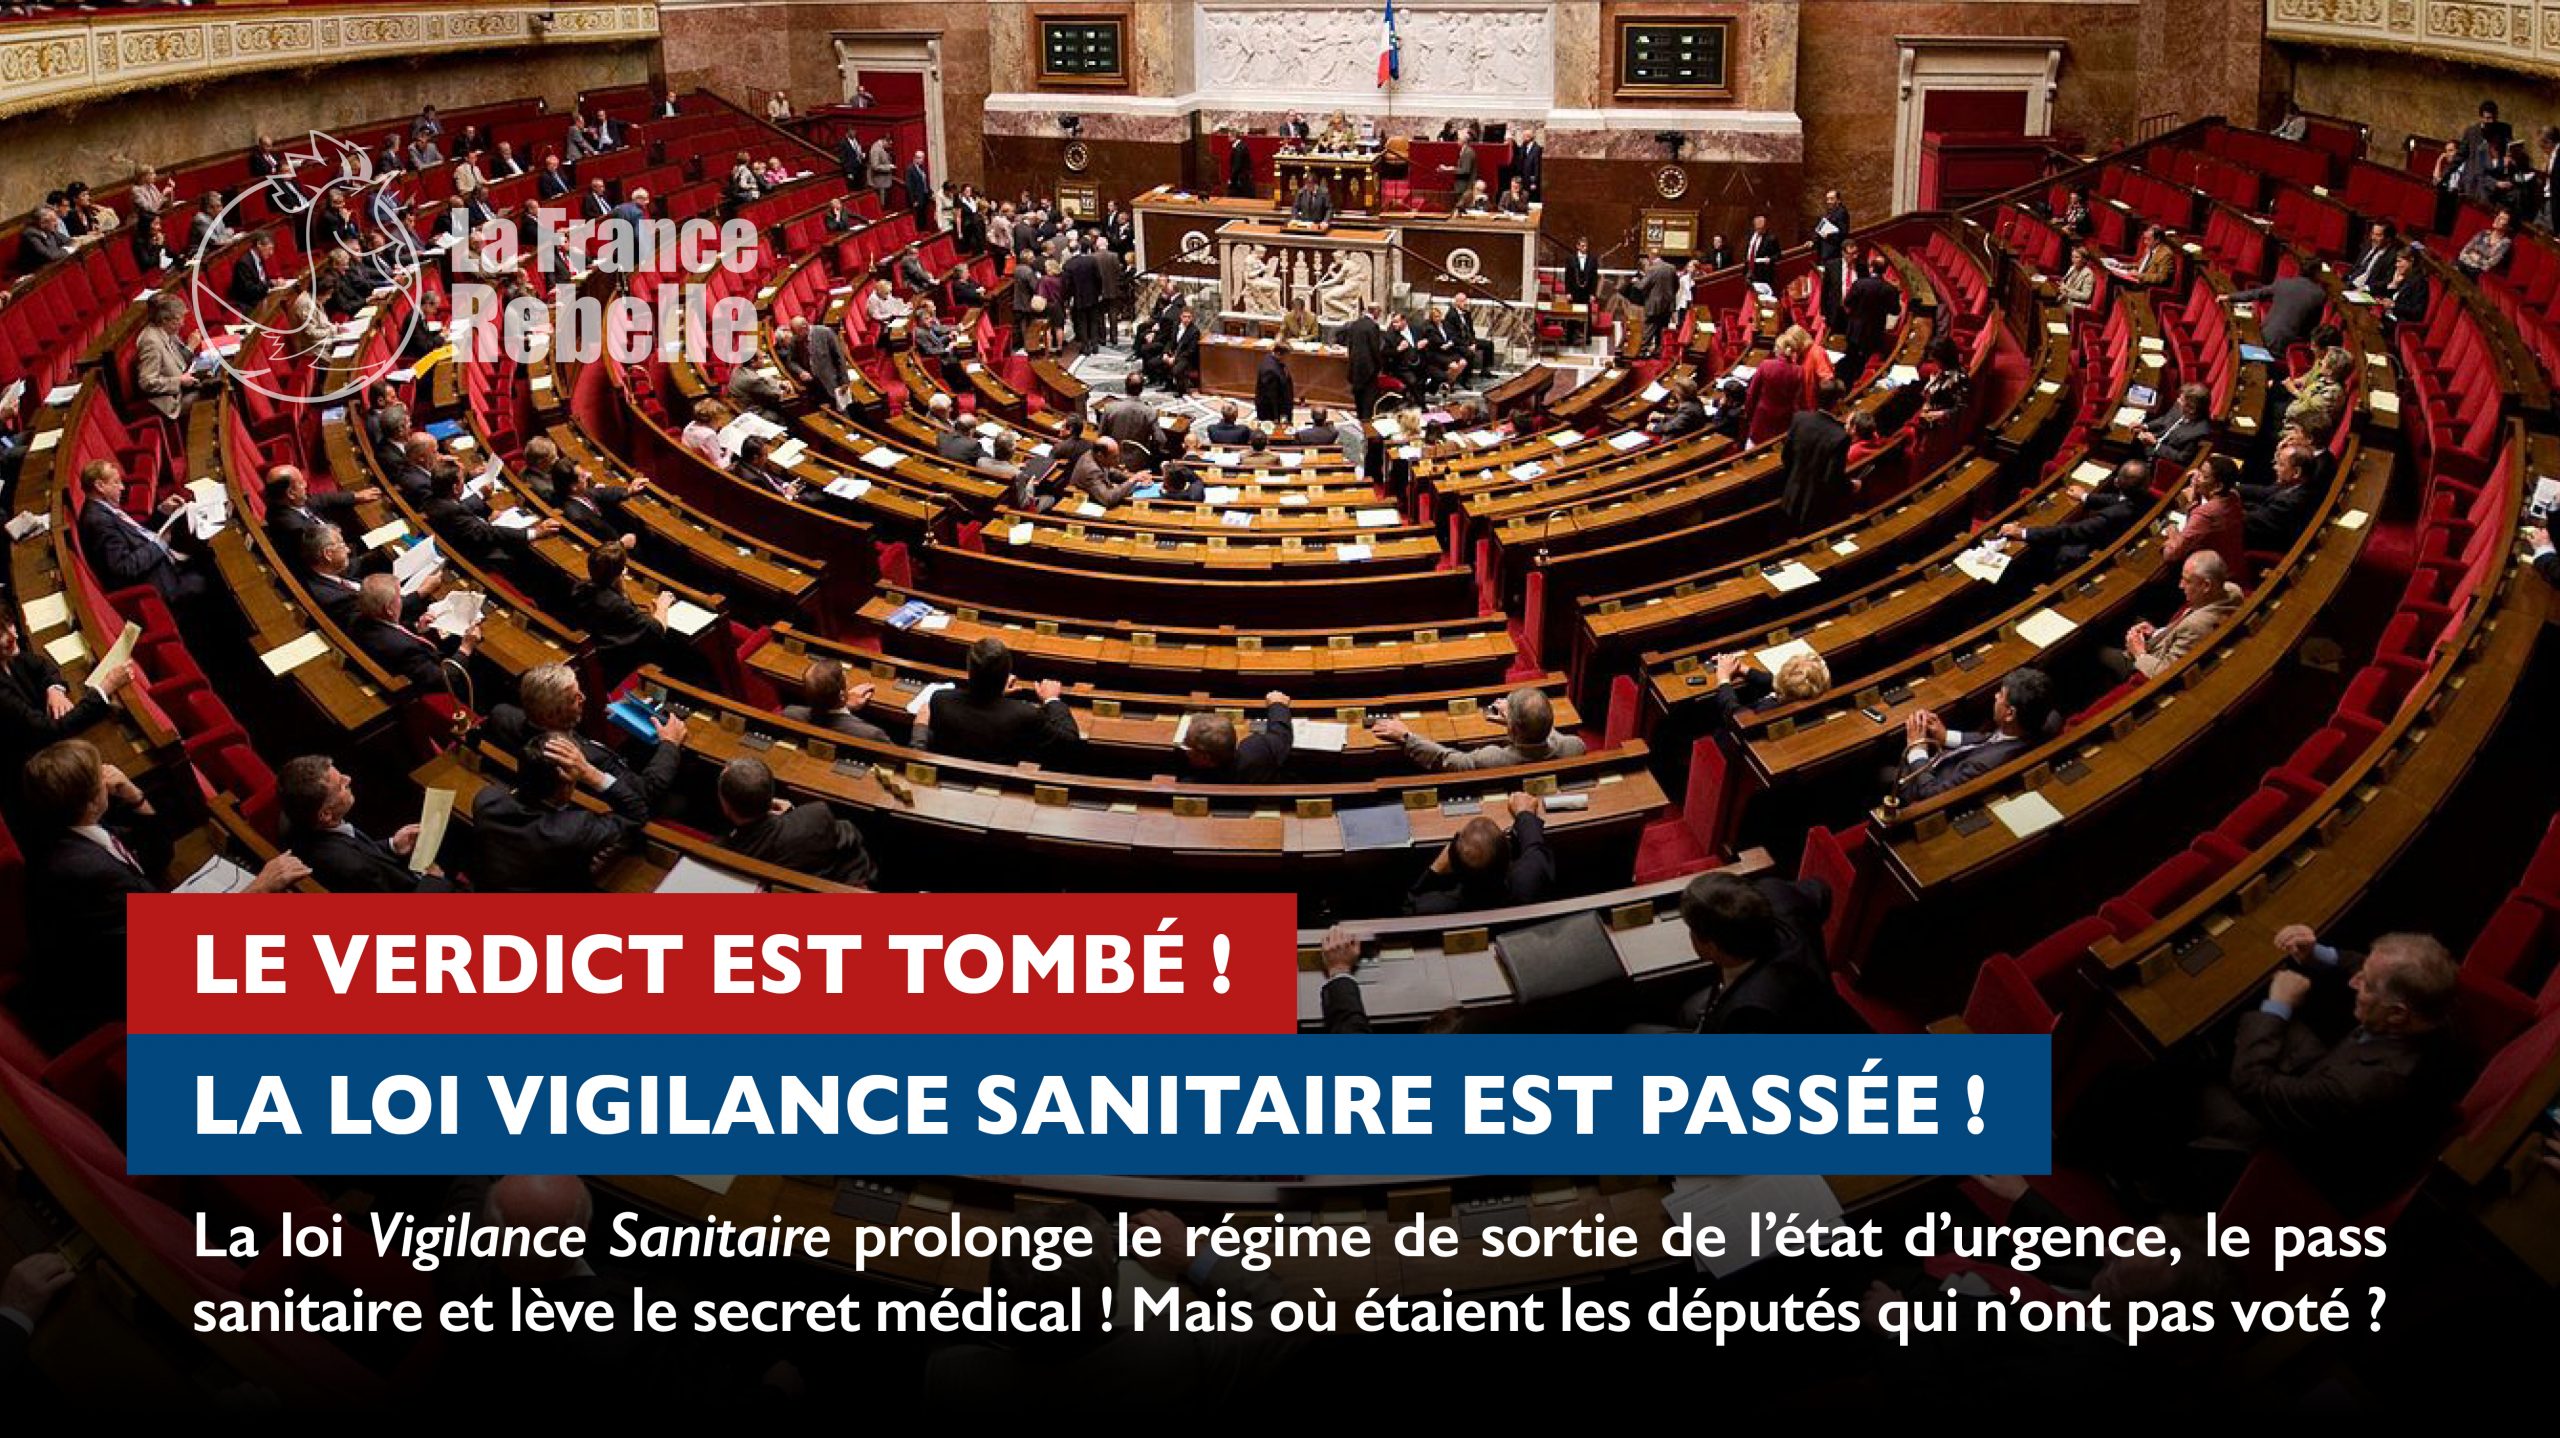 You are currently viewing La loi Vigilance Sanitaire est passée !